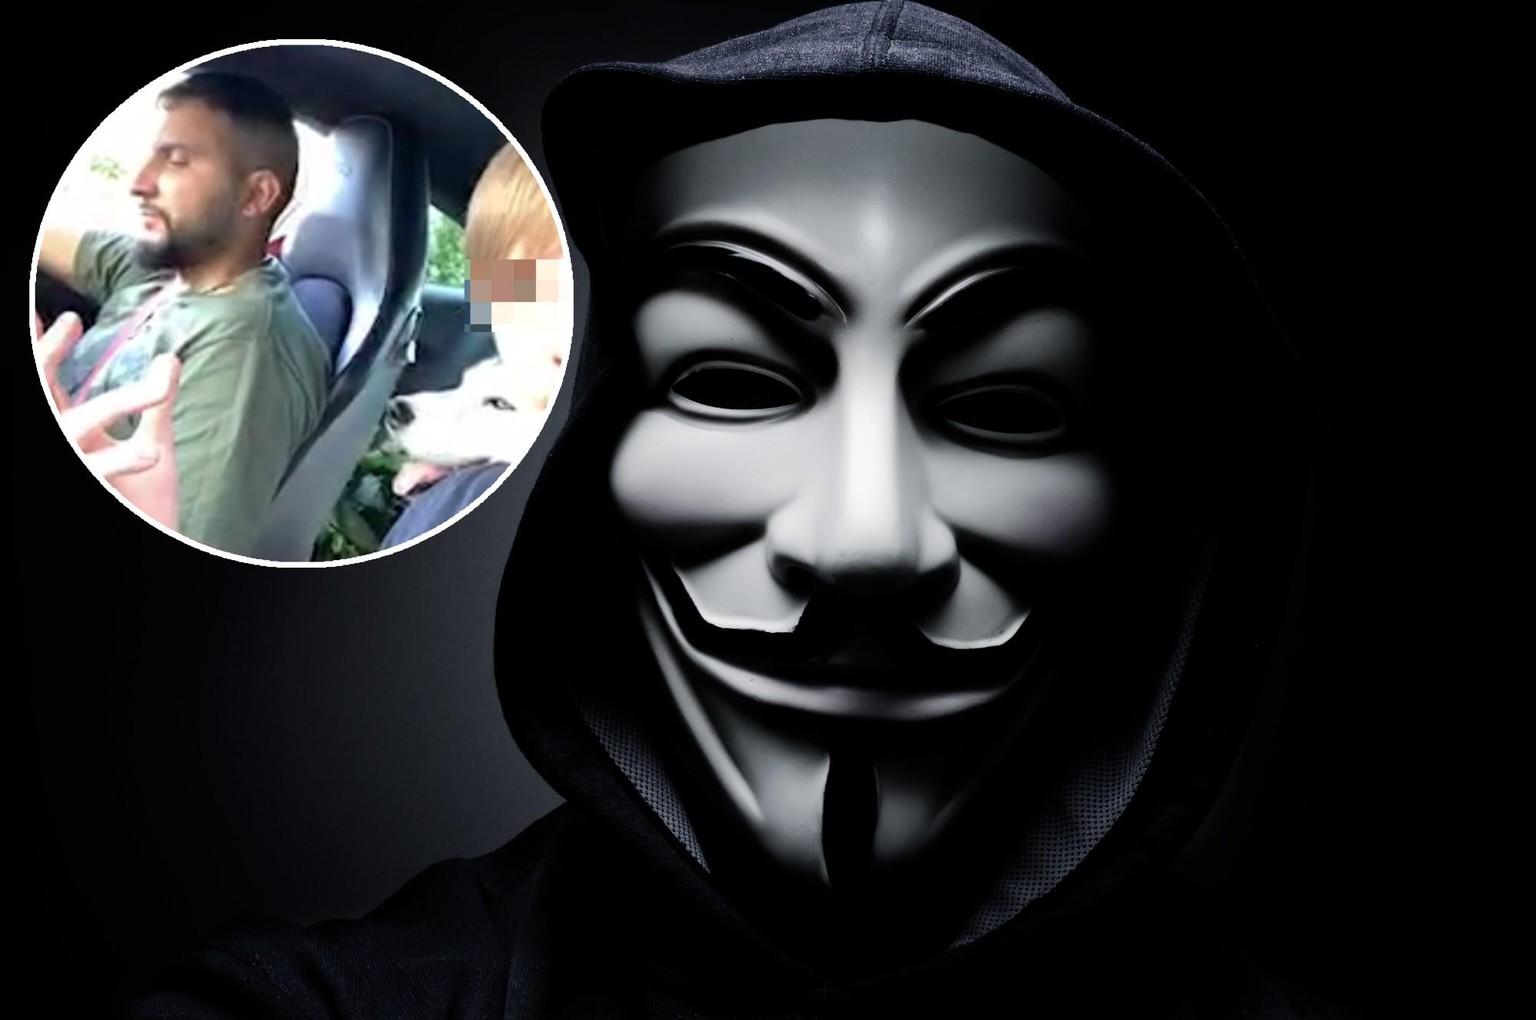 Hildmanns IT-Admin Kai hat die Seiten gewechselt und lieferte dem Hacker-Kollektiv Anonymous die Zugänge zu dessen Webseiten und Telegram-Kanälen.